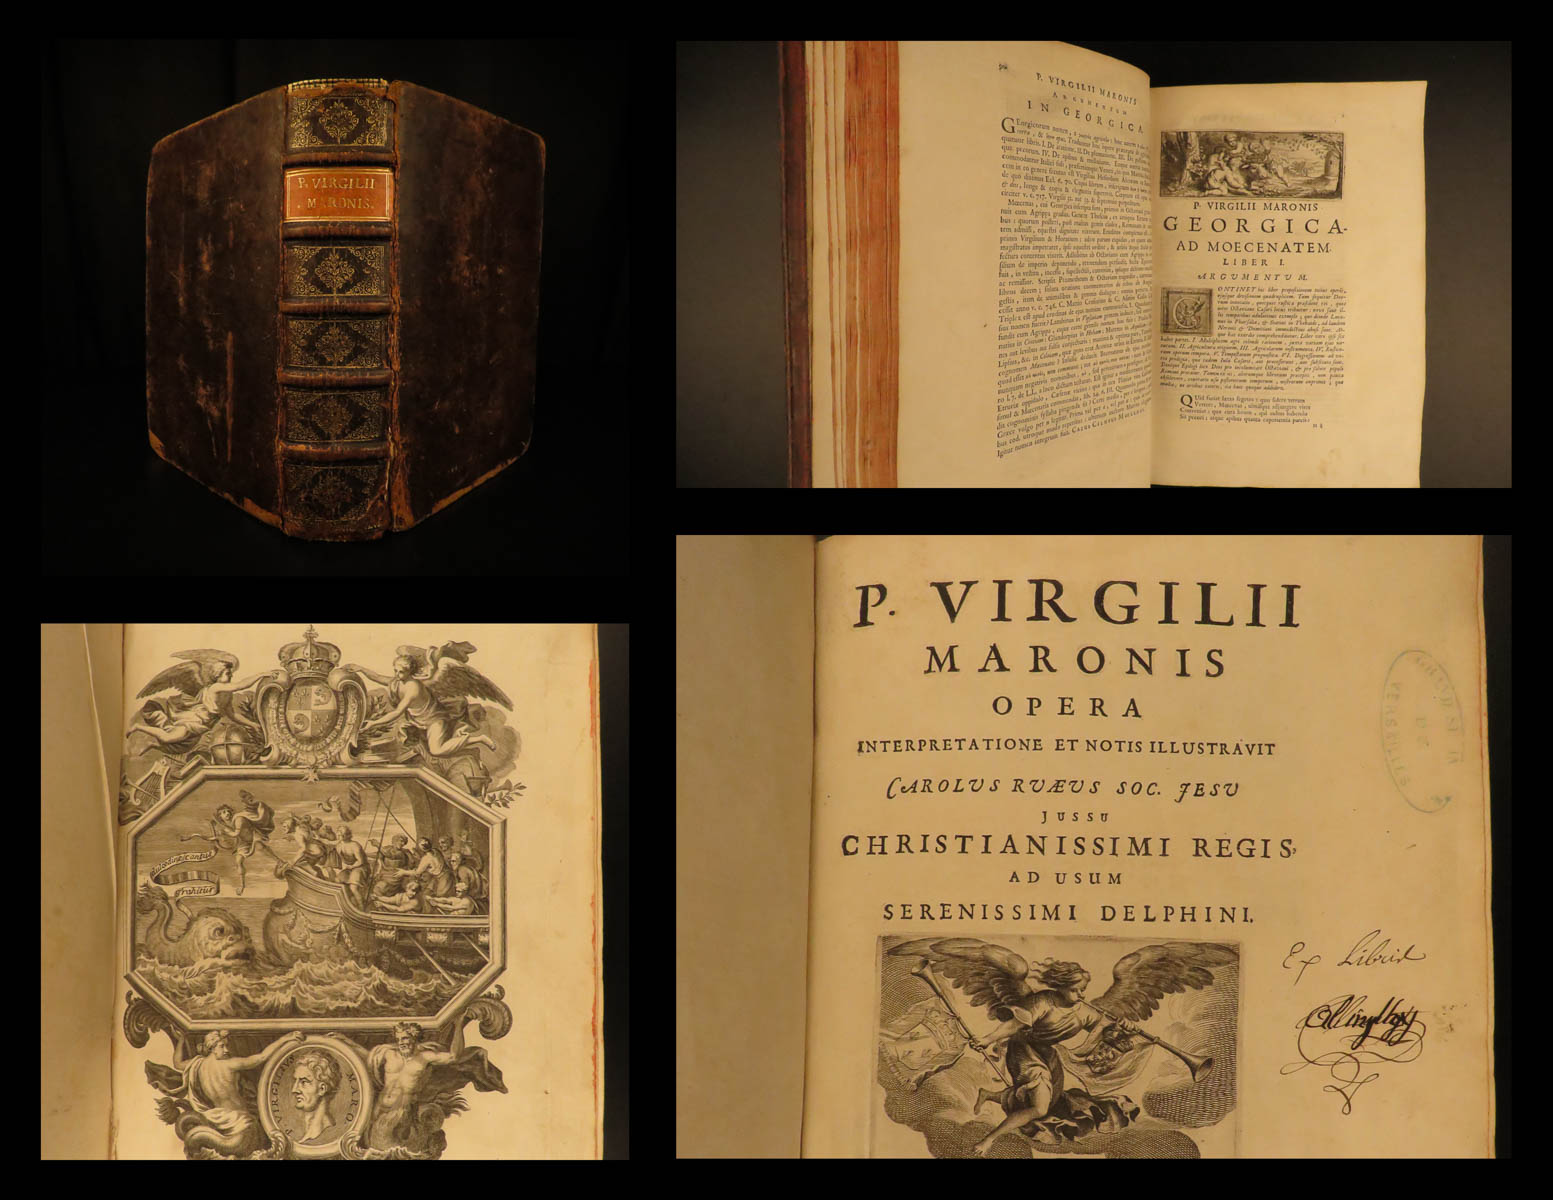 P Virgilii Maronis Opera First Edition Abebooks